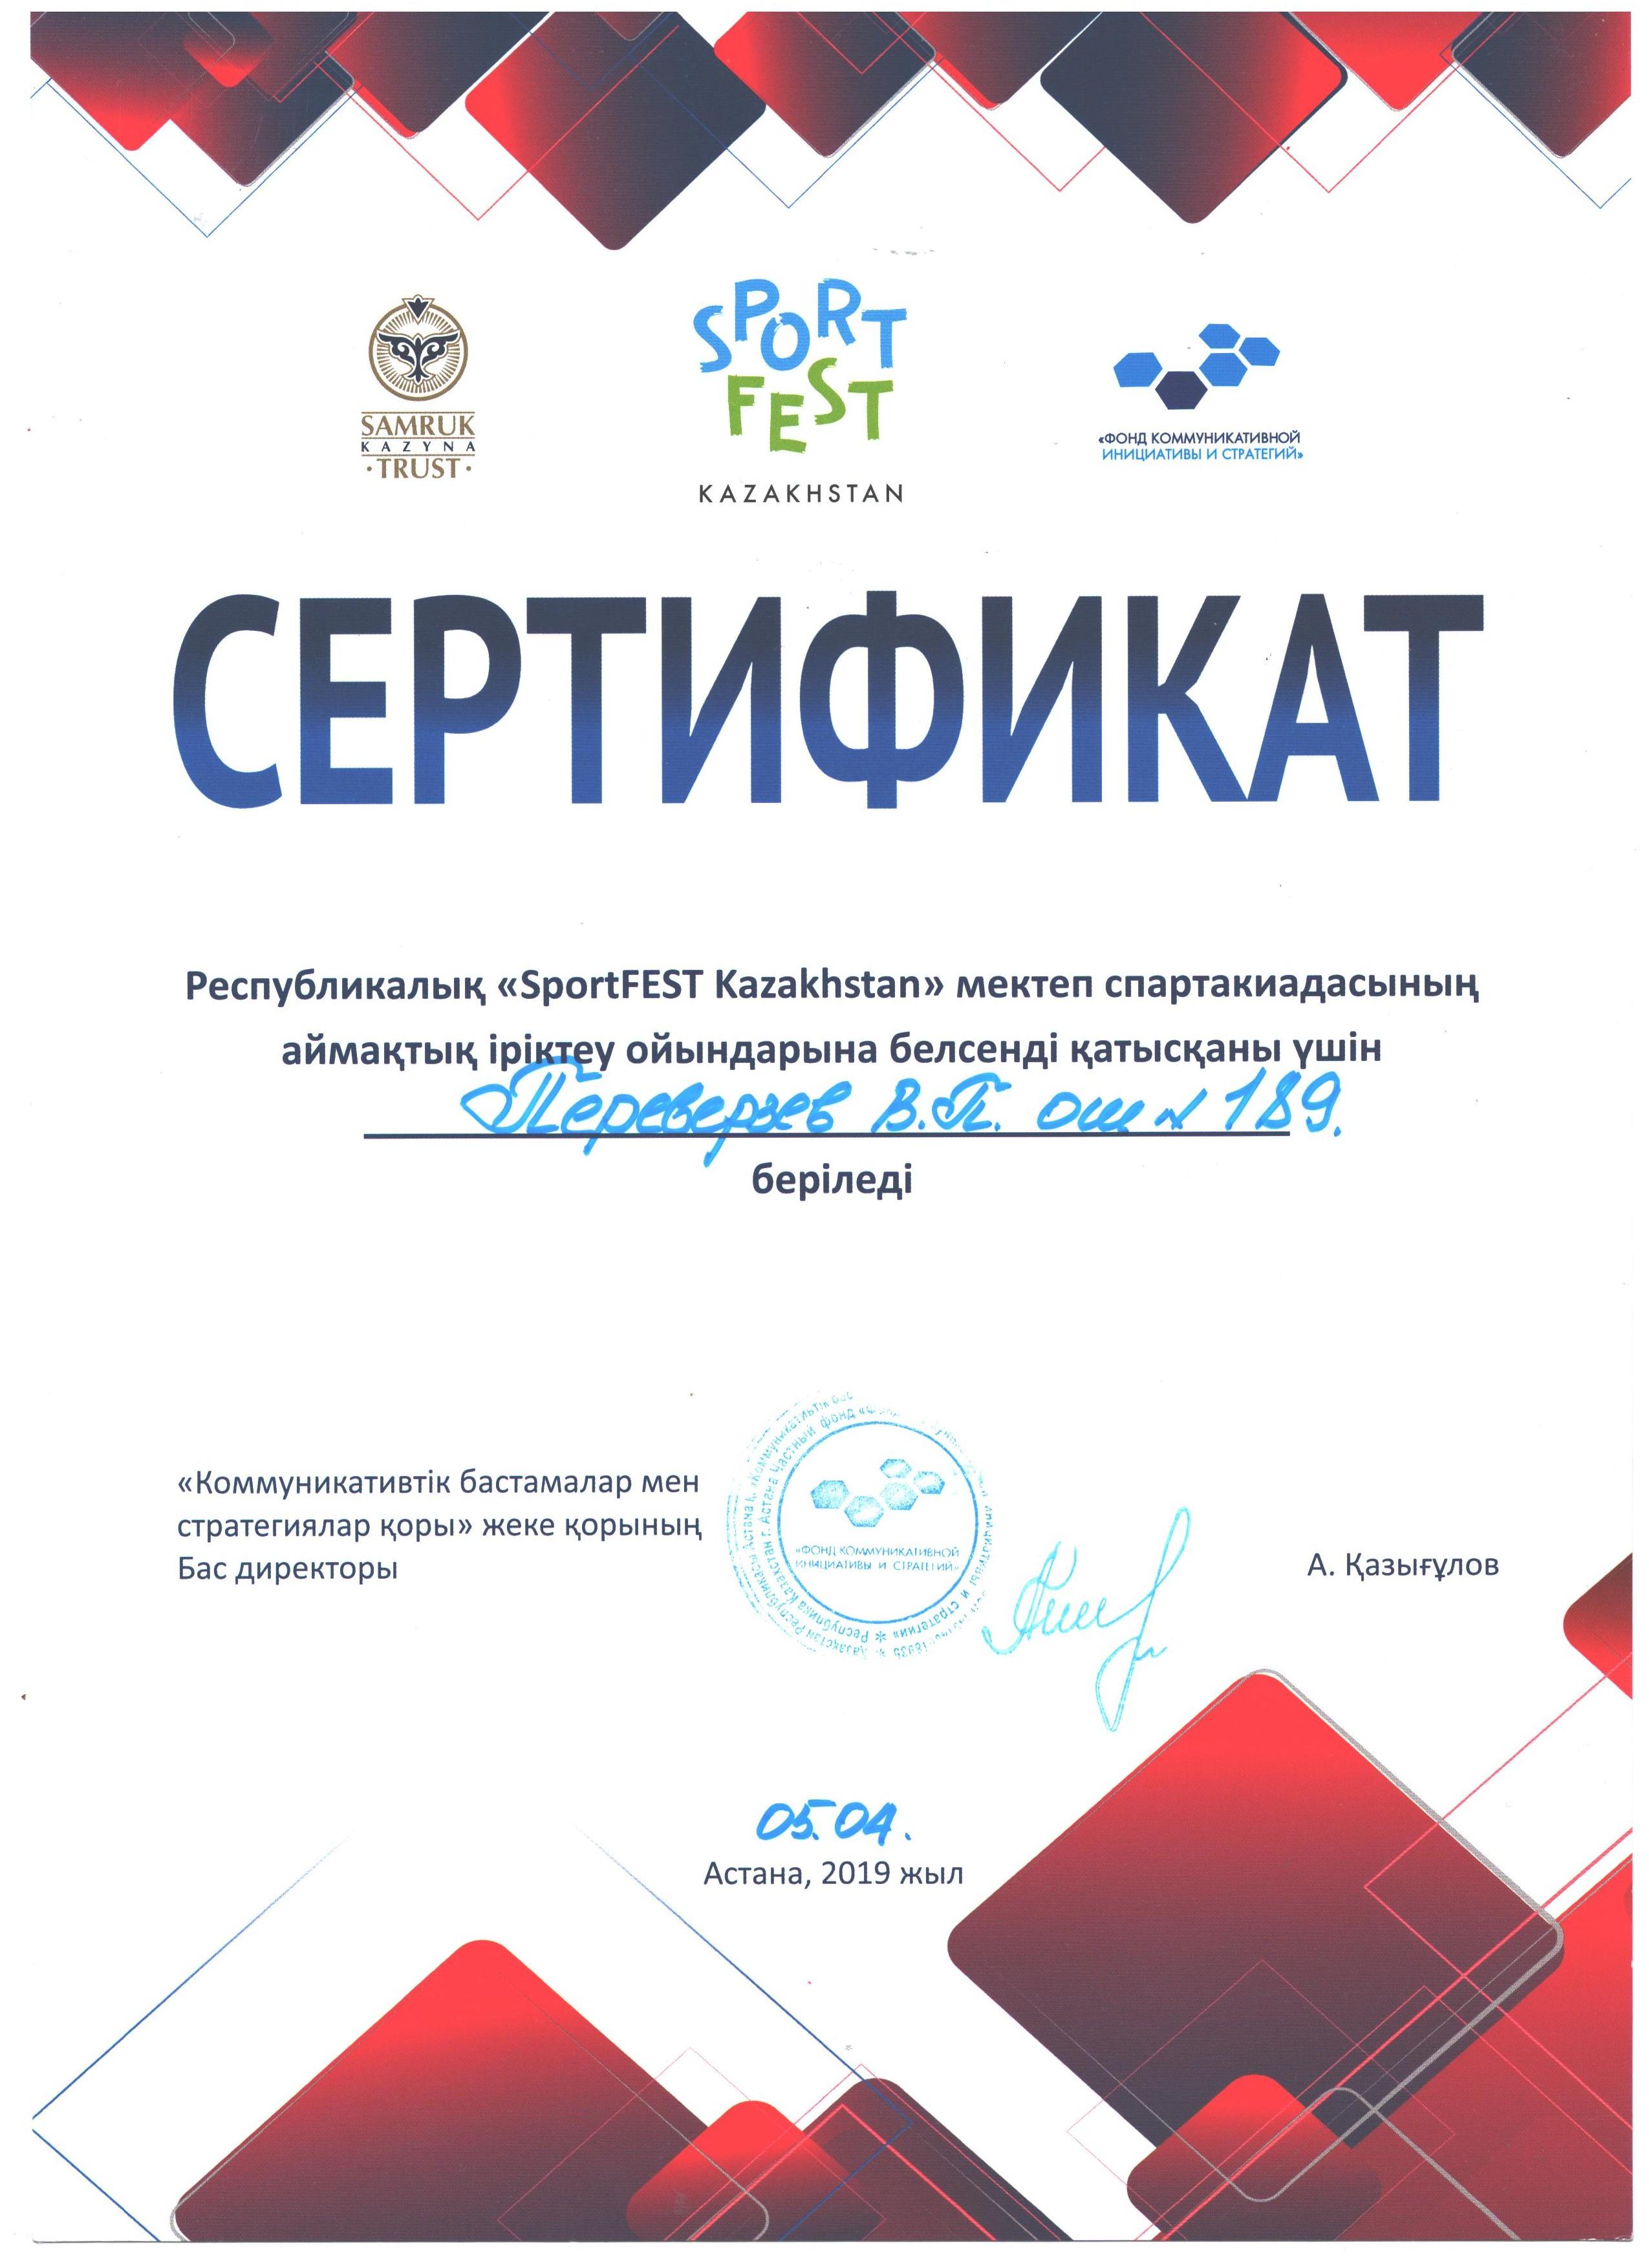 Участие в "SportFEST Kazakhstan"